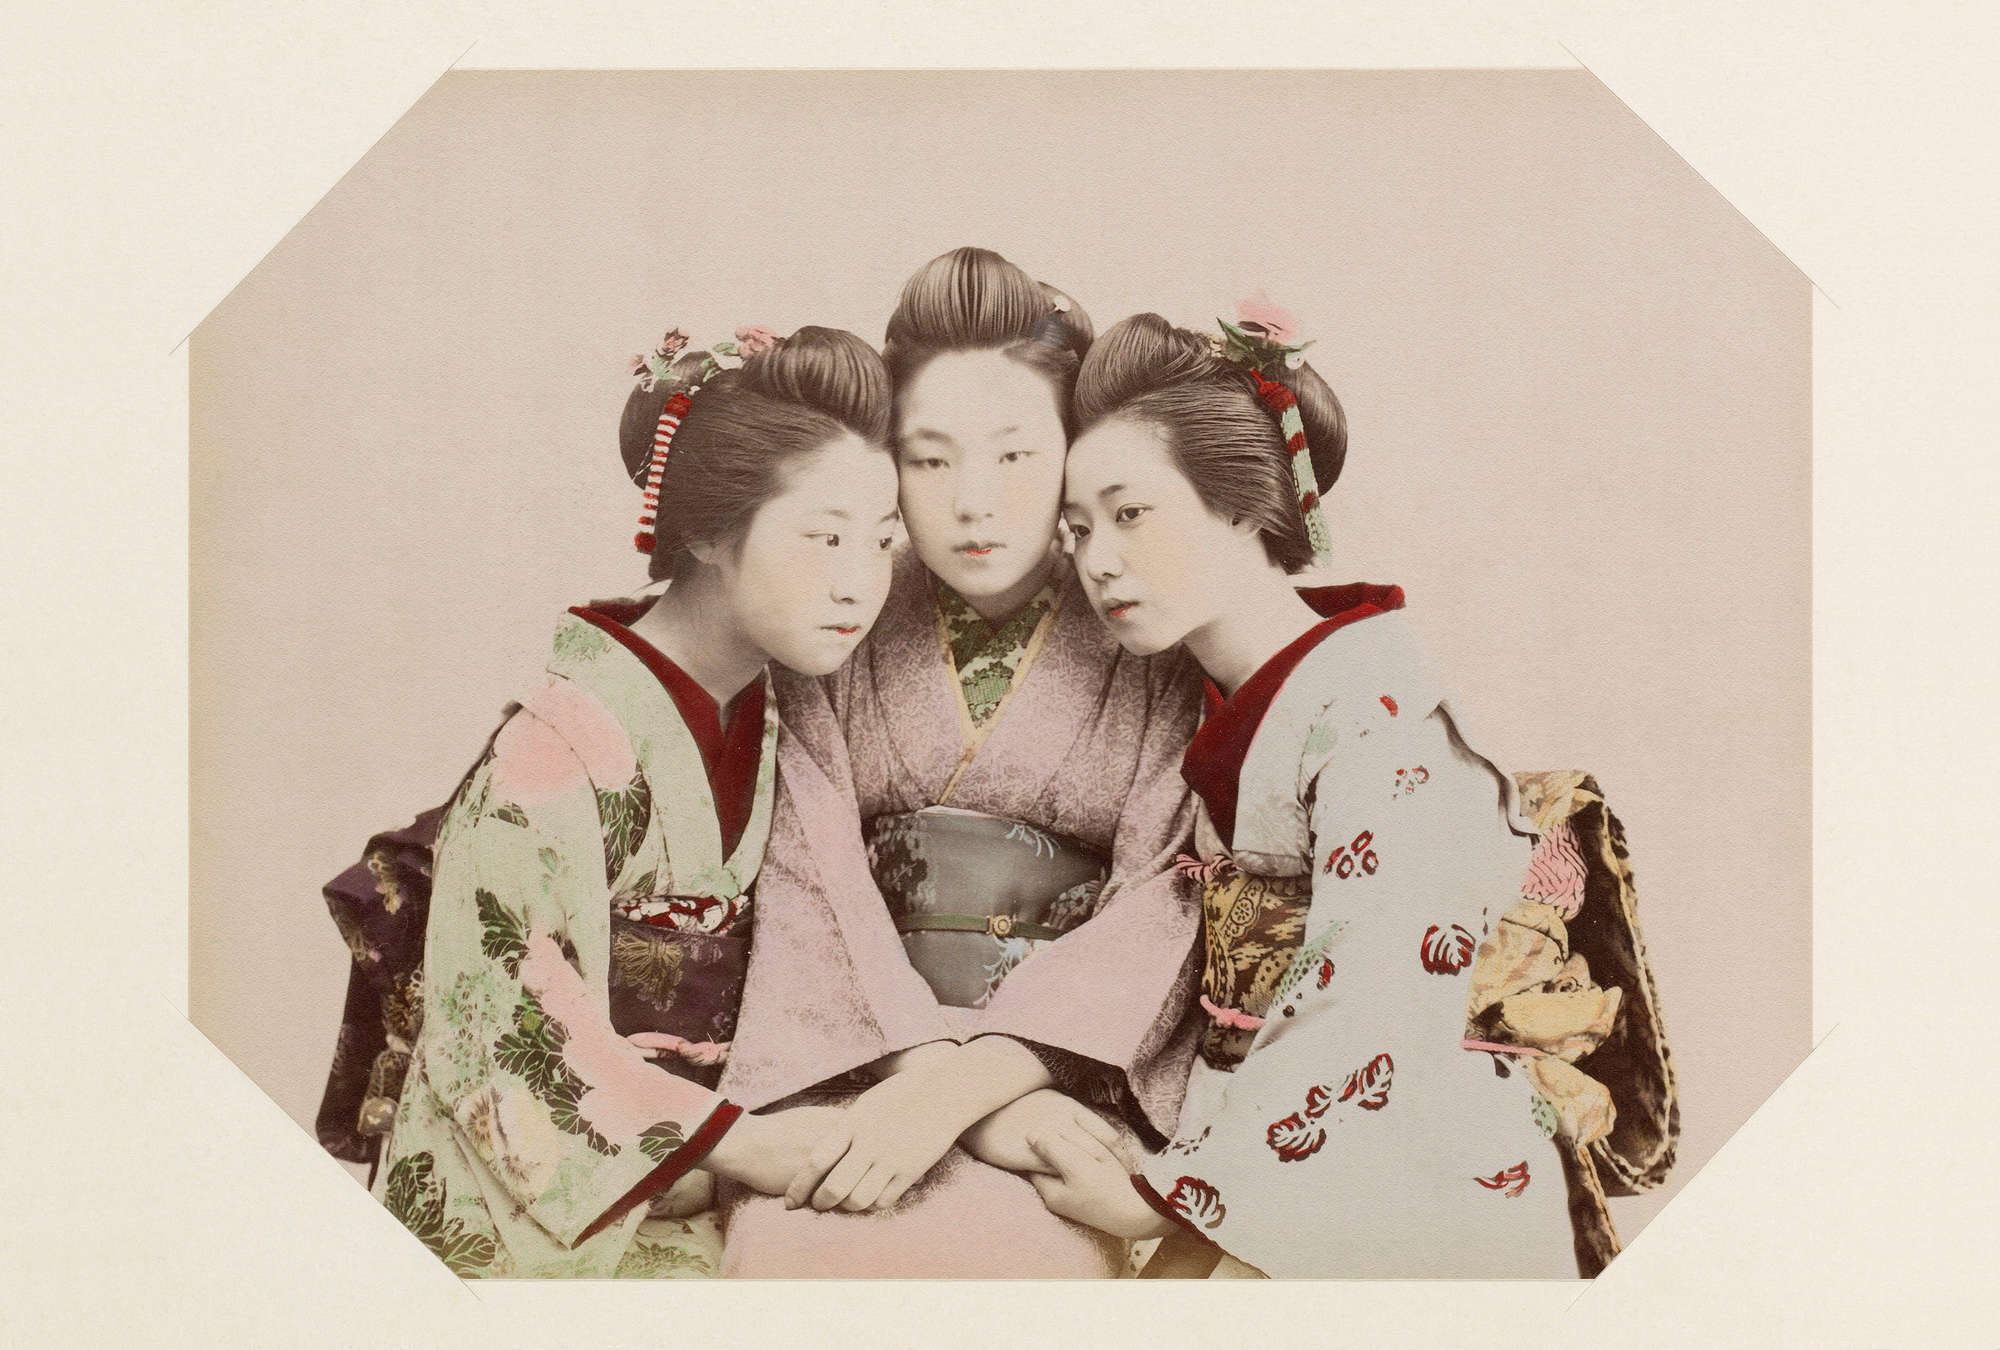             Kyoto 1 - Ritratto di geisha d'epoca con cornice per immagini
        